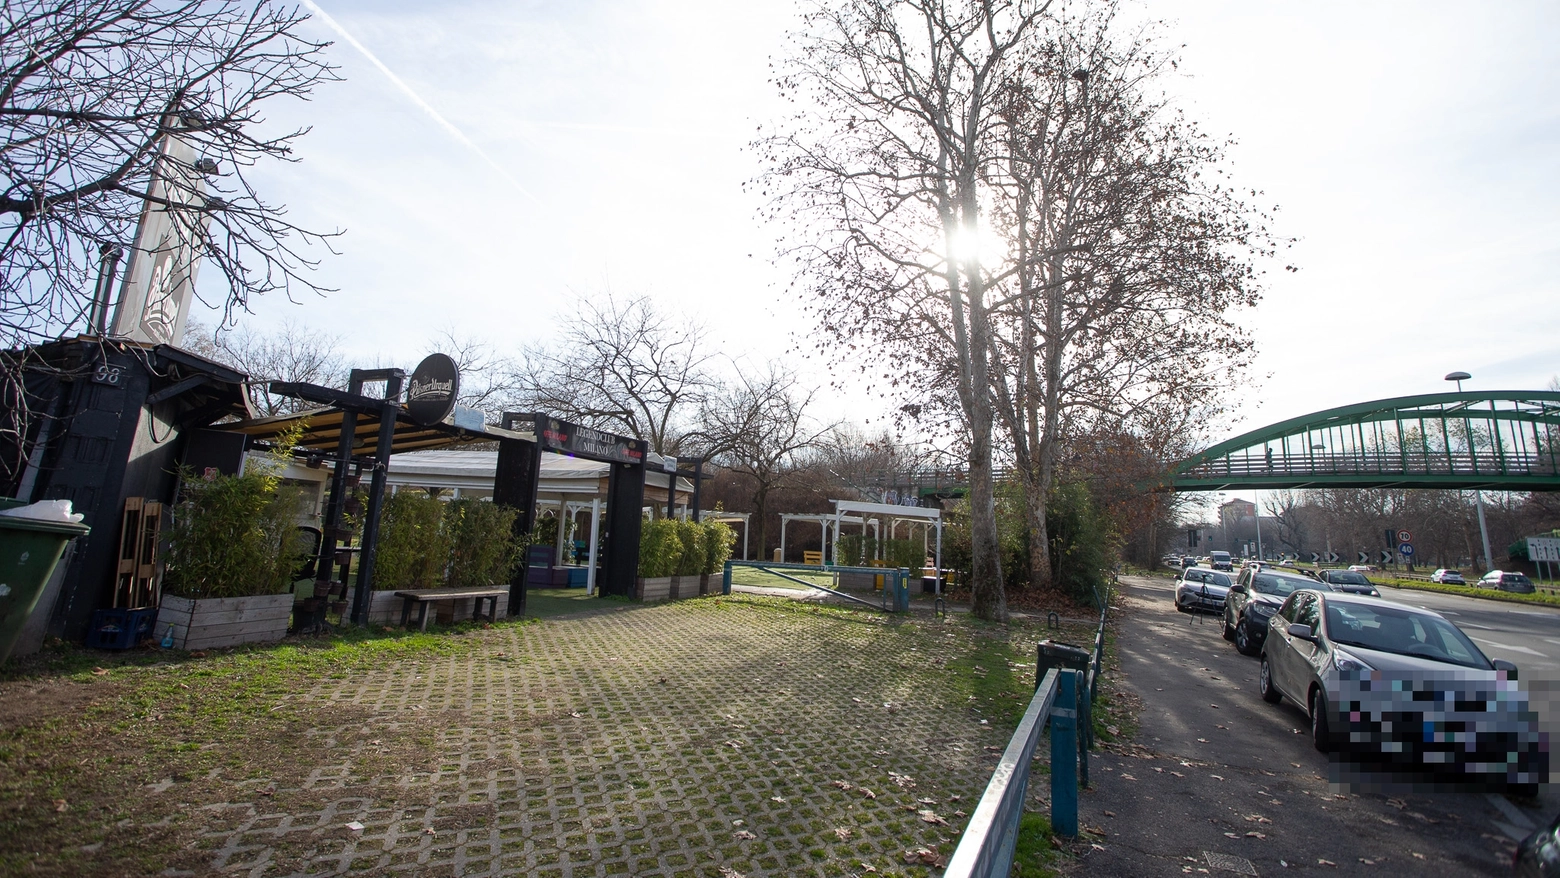 Milano, viale Enrico Fermi: il luogo dove è avvenuta l'aggressione a due ragazze